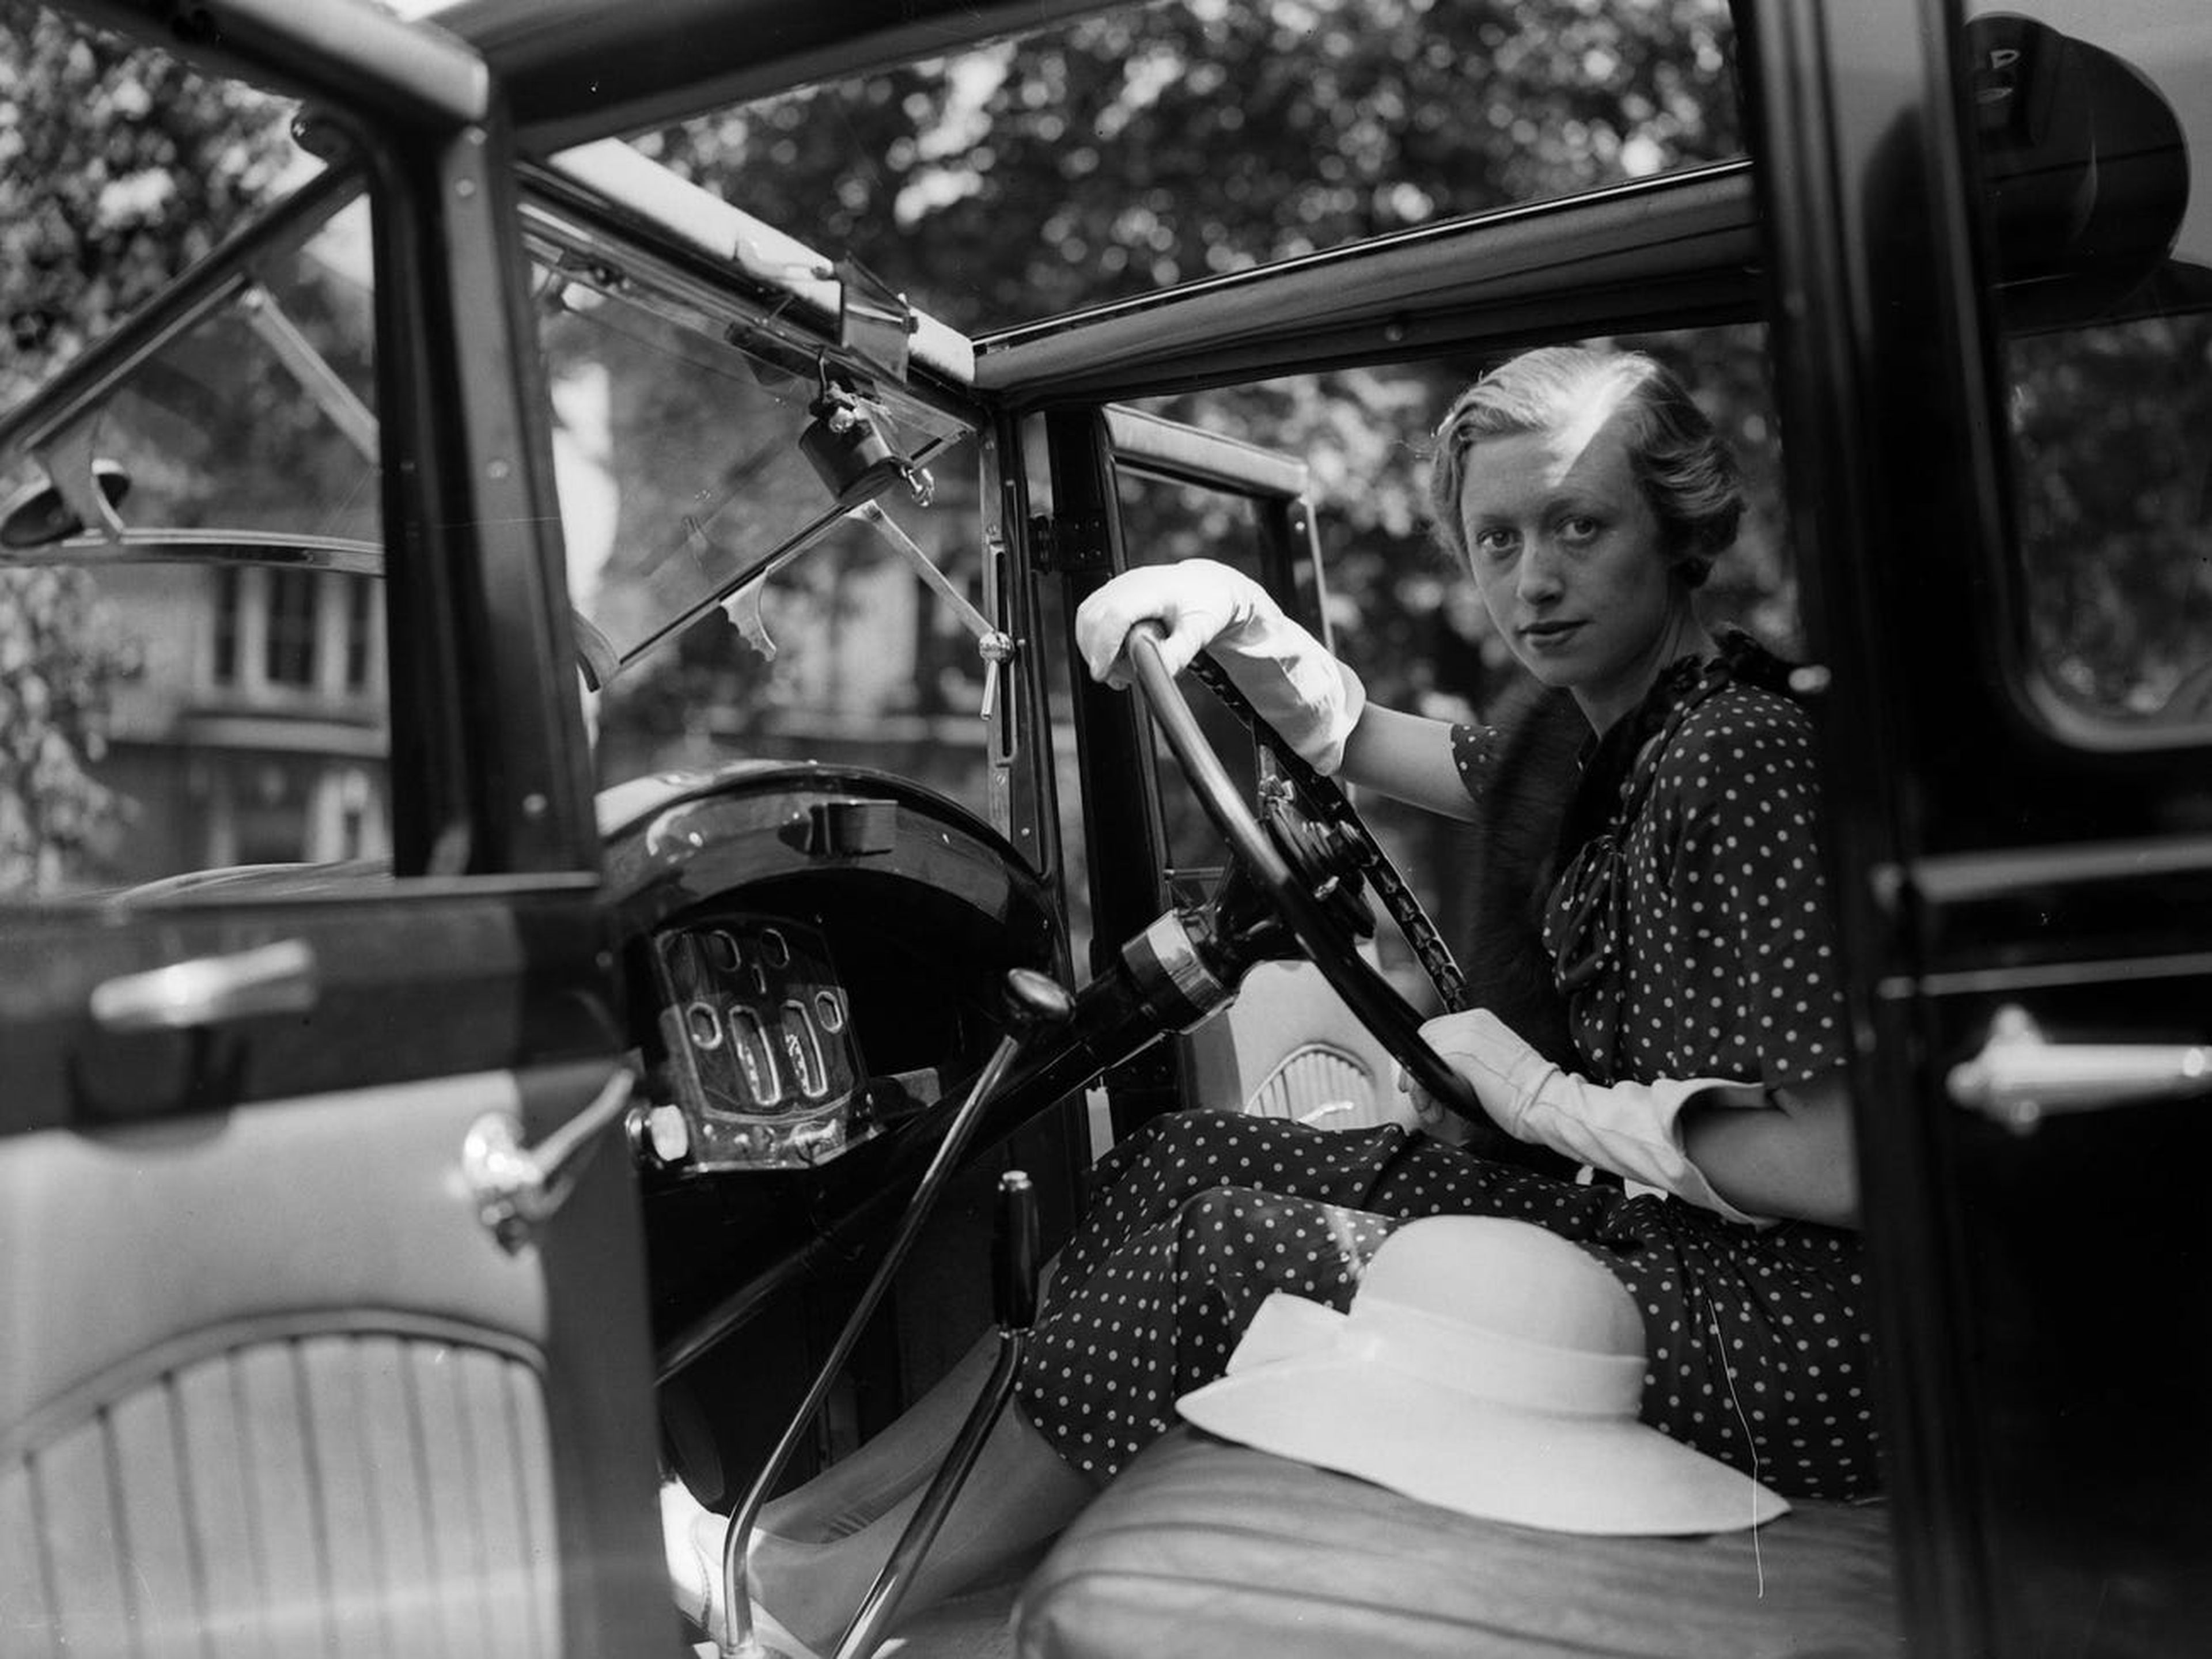 Una chica con su automóvil Humber, hacia 1927.